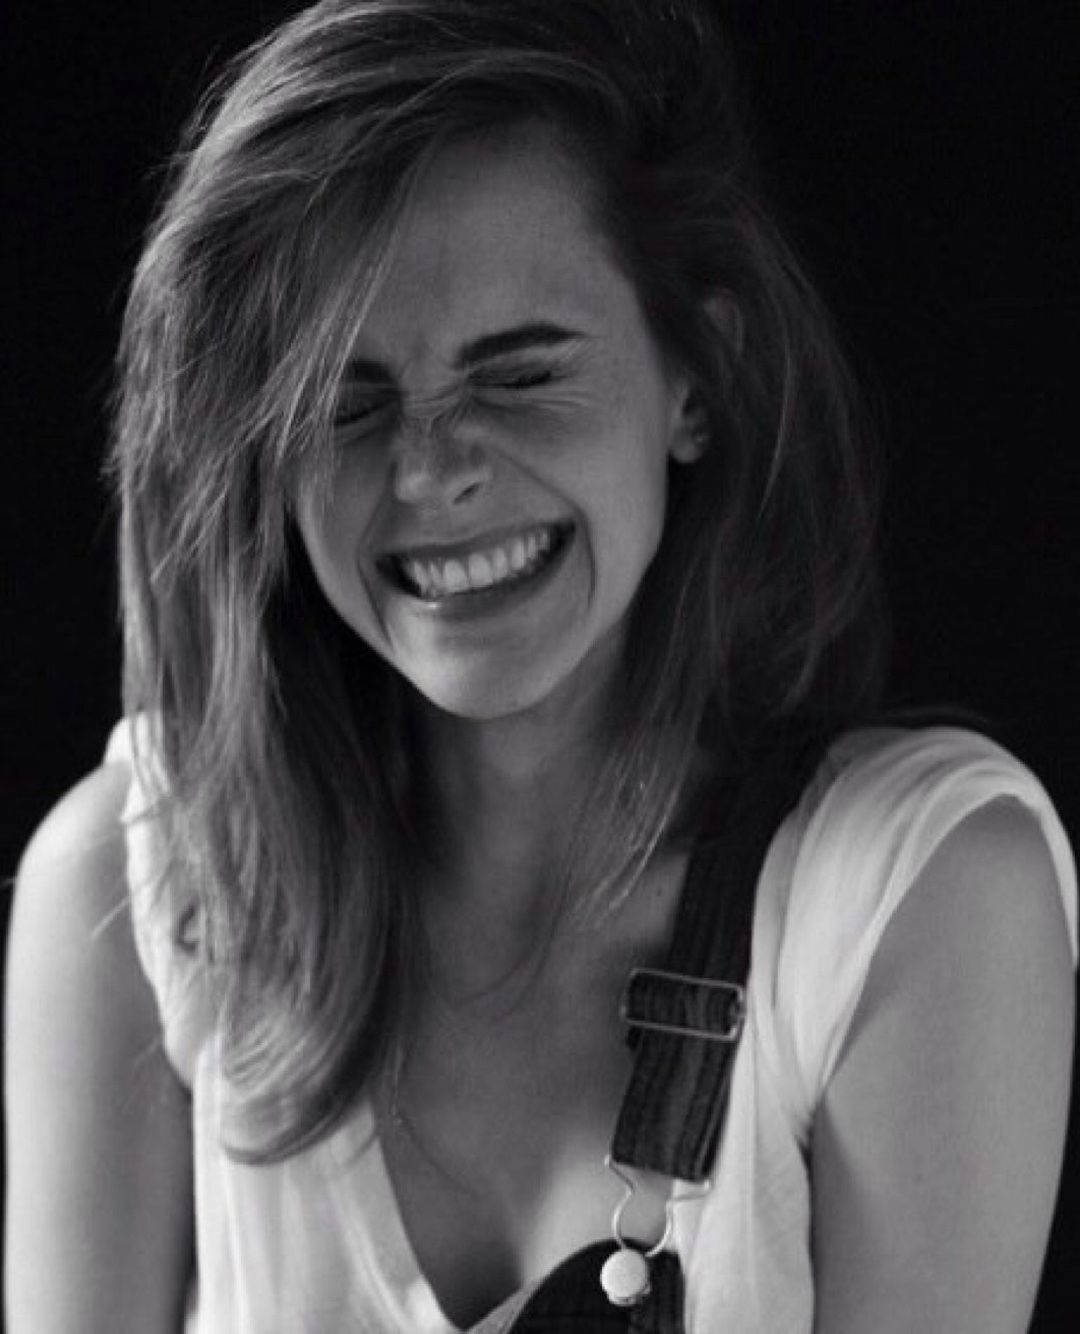 Emma Watson's Bright, Beautiful Smile Background